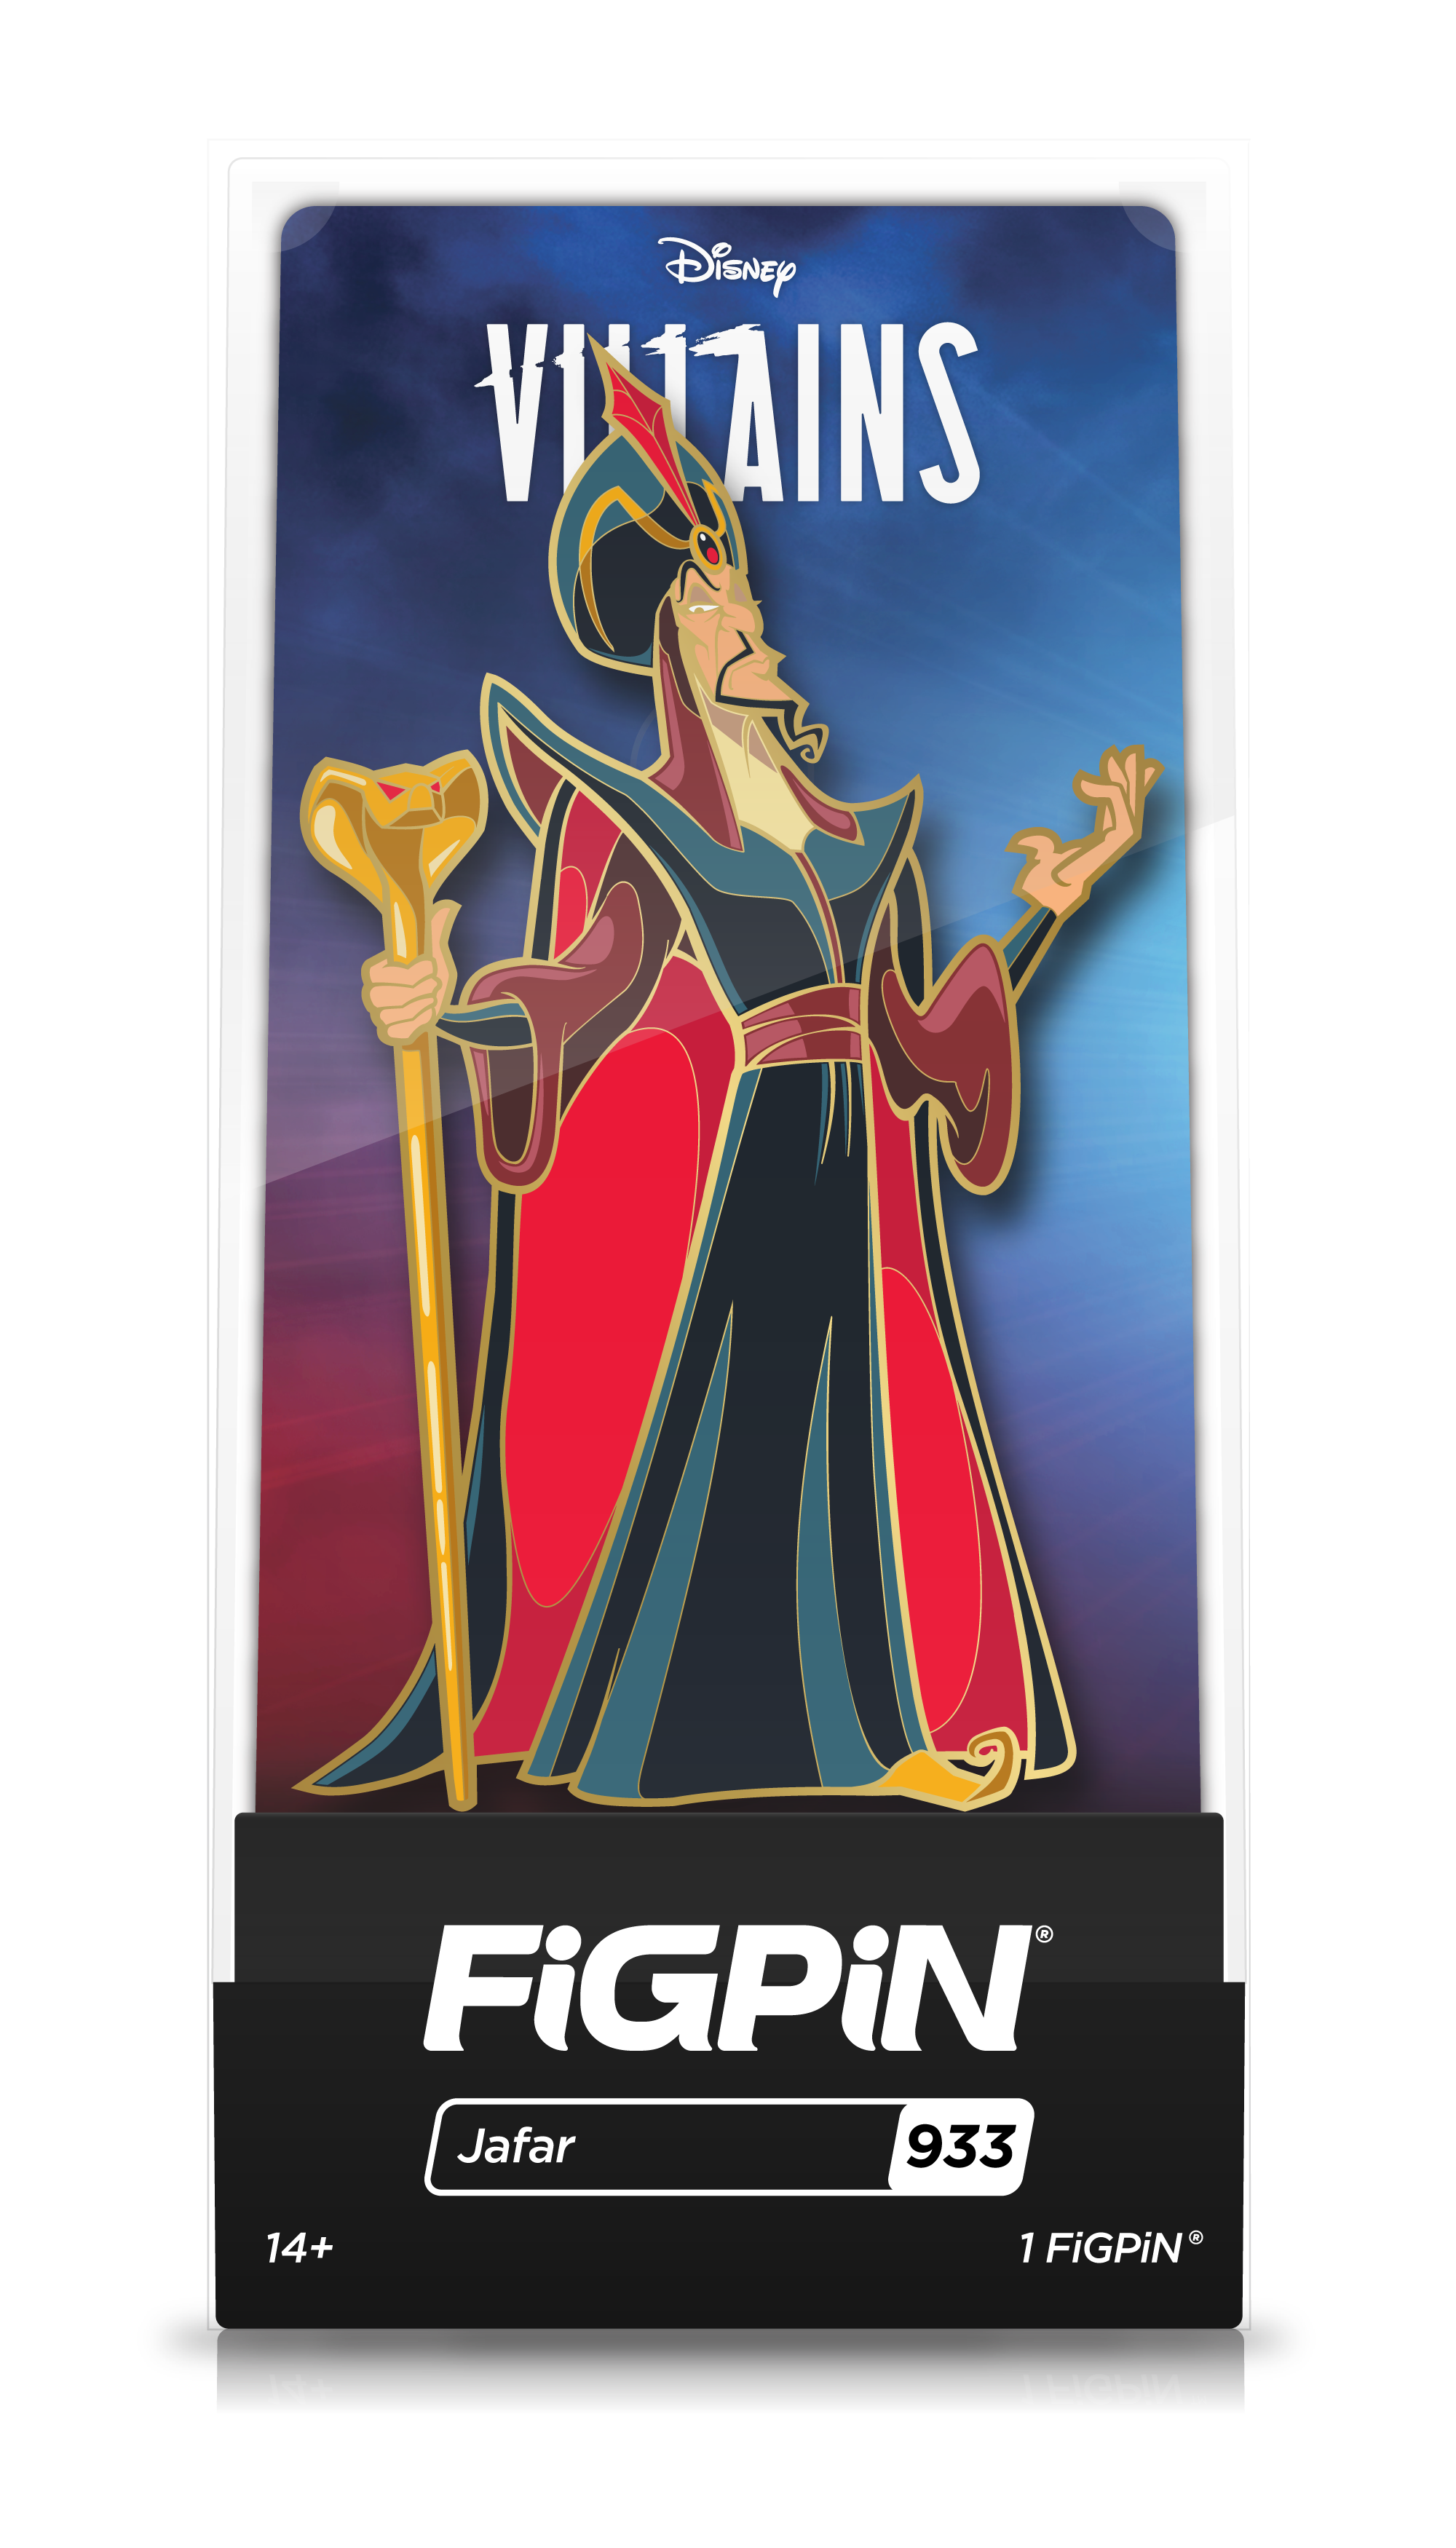 Front view of Disney's Villains Jafar enamel pin inside FiGPiN Display case reading “FiGPiN - Jafar (933)”